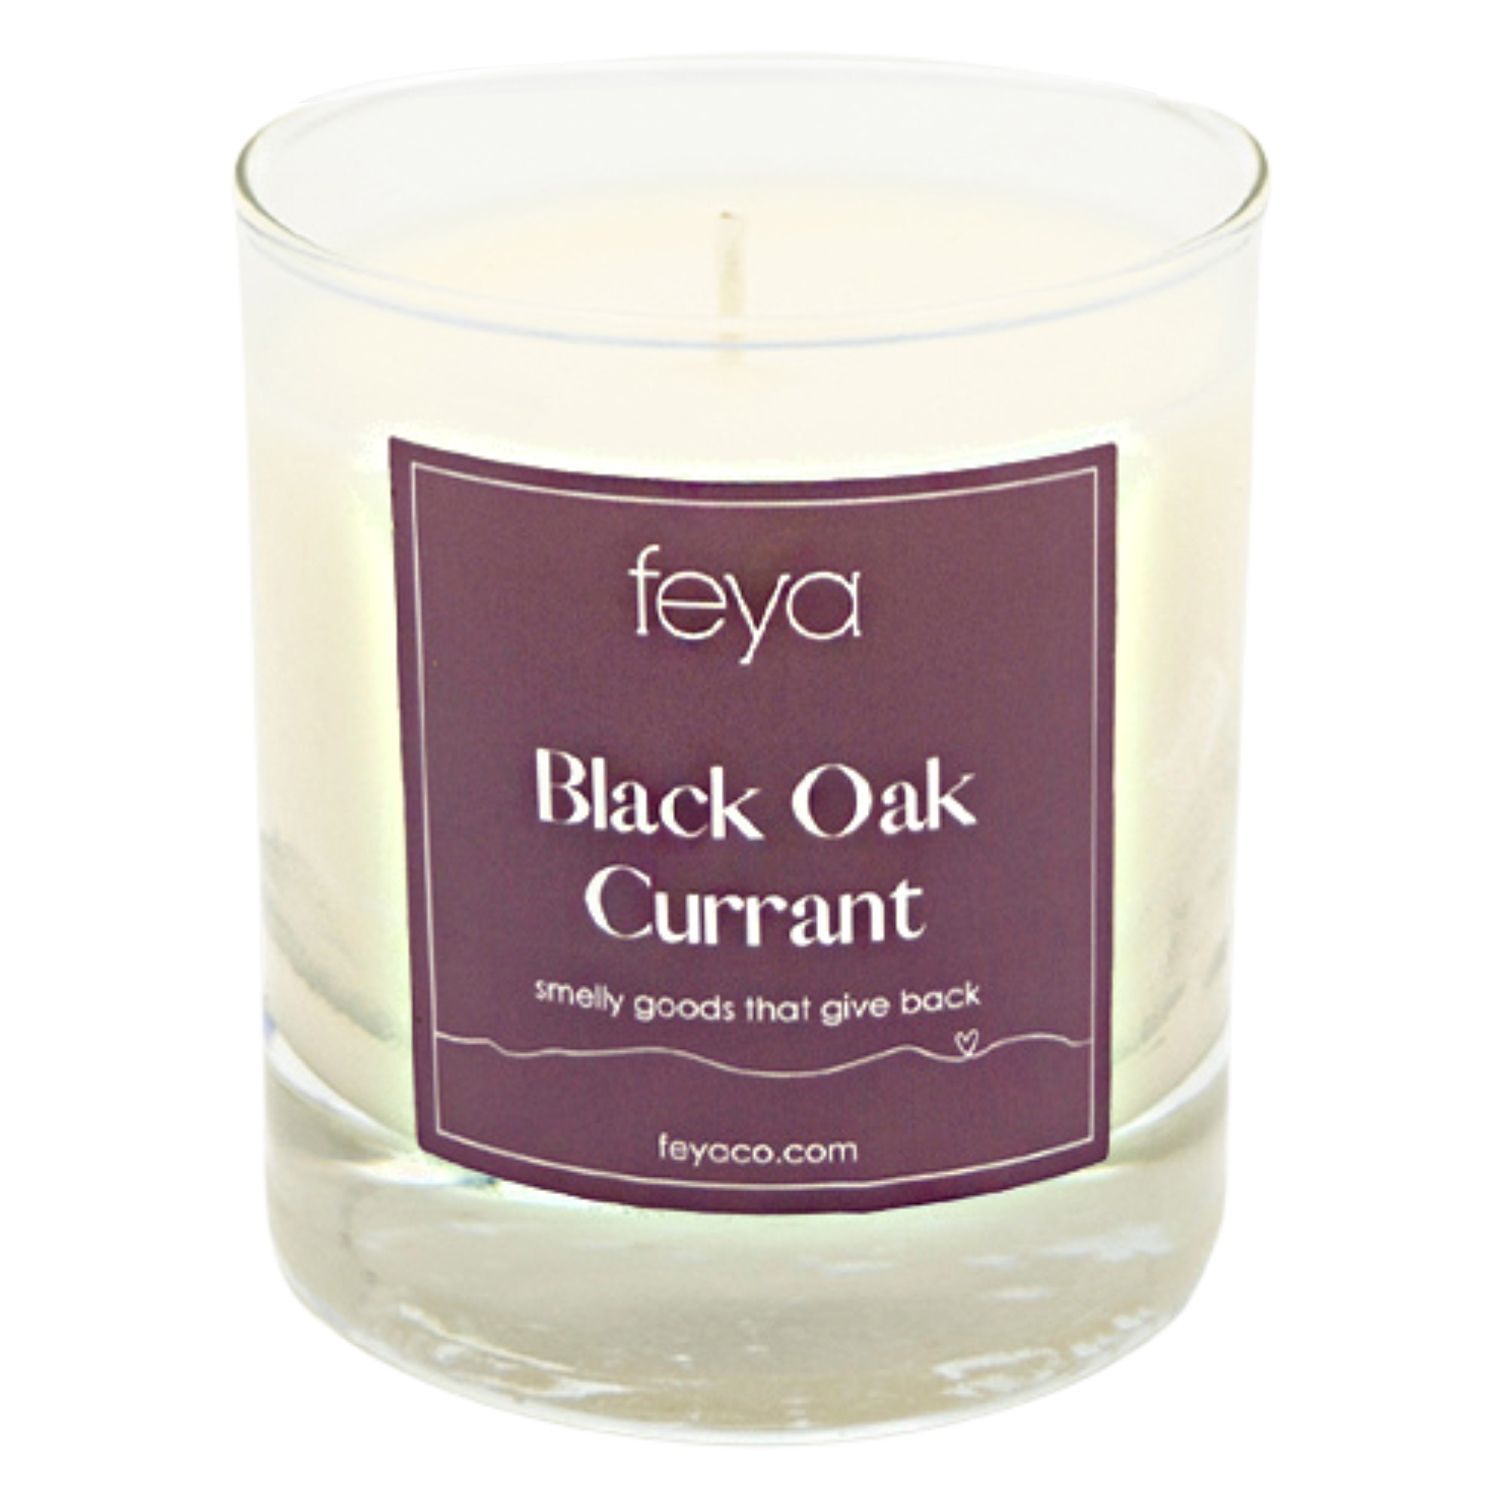 свеча momacandle black currant Свеча Feya Черный Дуб Смородина 6,5 унций. Соевая свеча